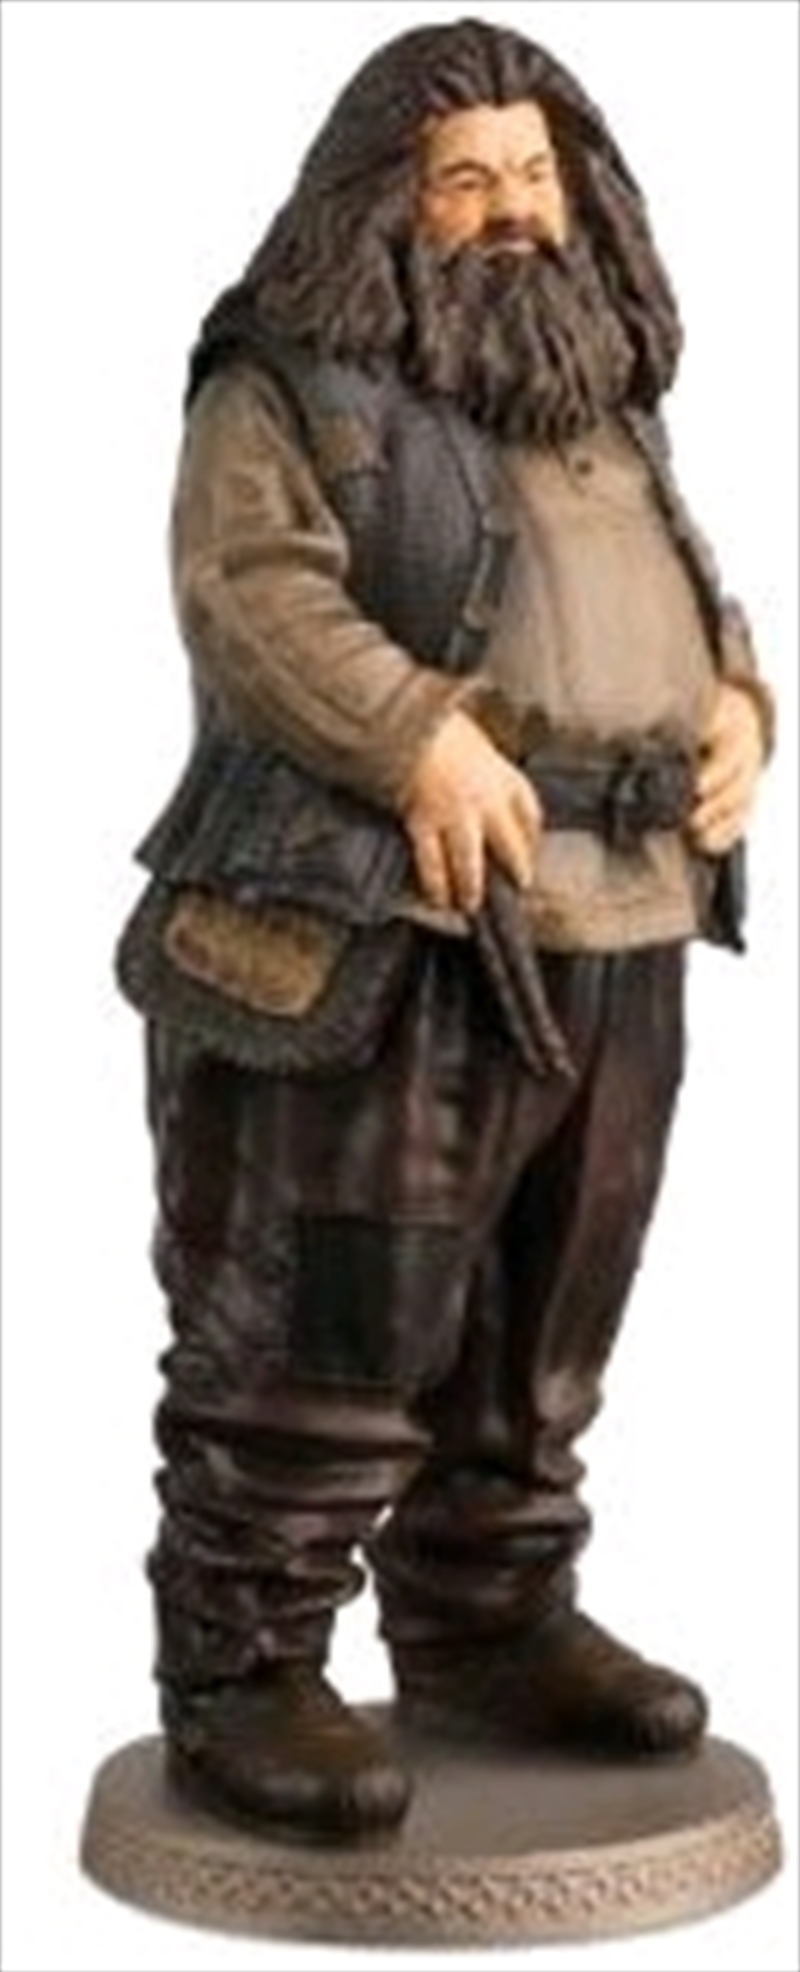 Harry Potter - Hagrid 1:16 Figure & Magazine/Product Detail/Figurines